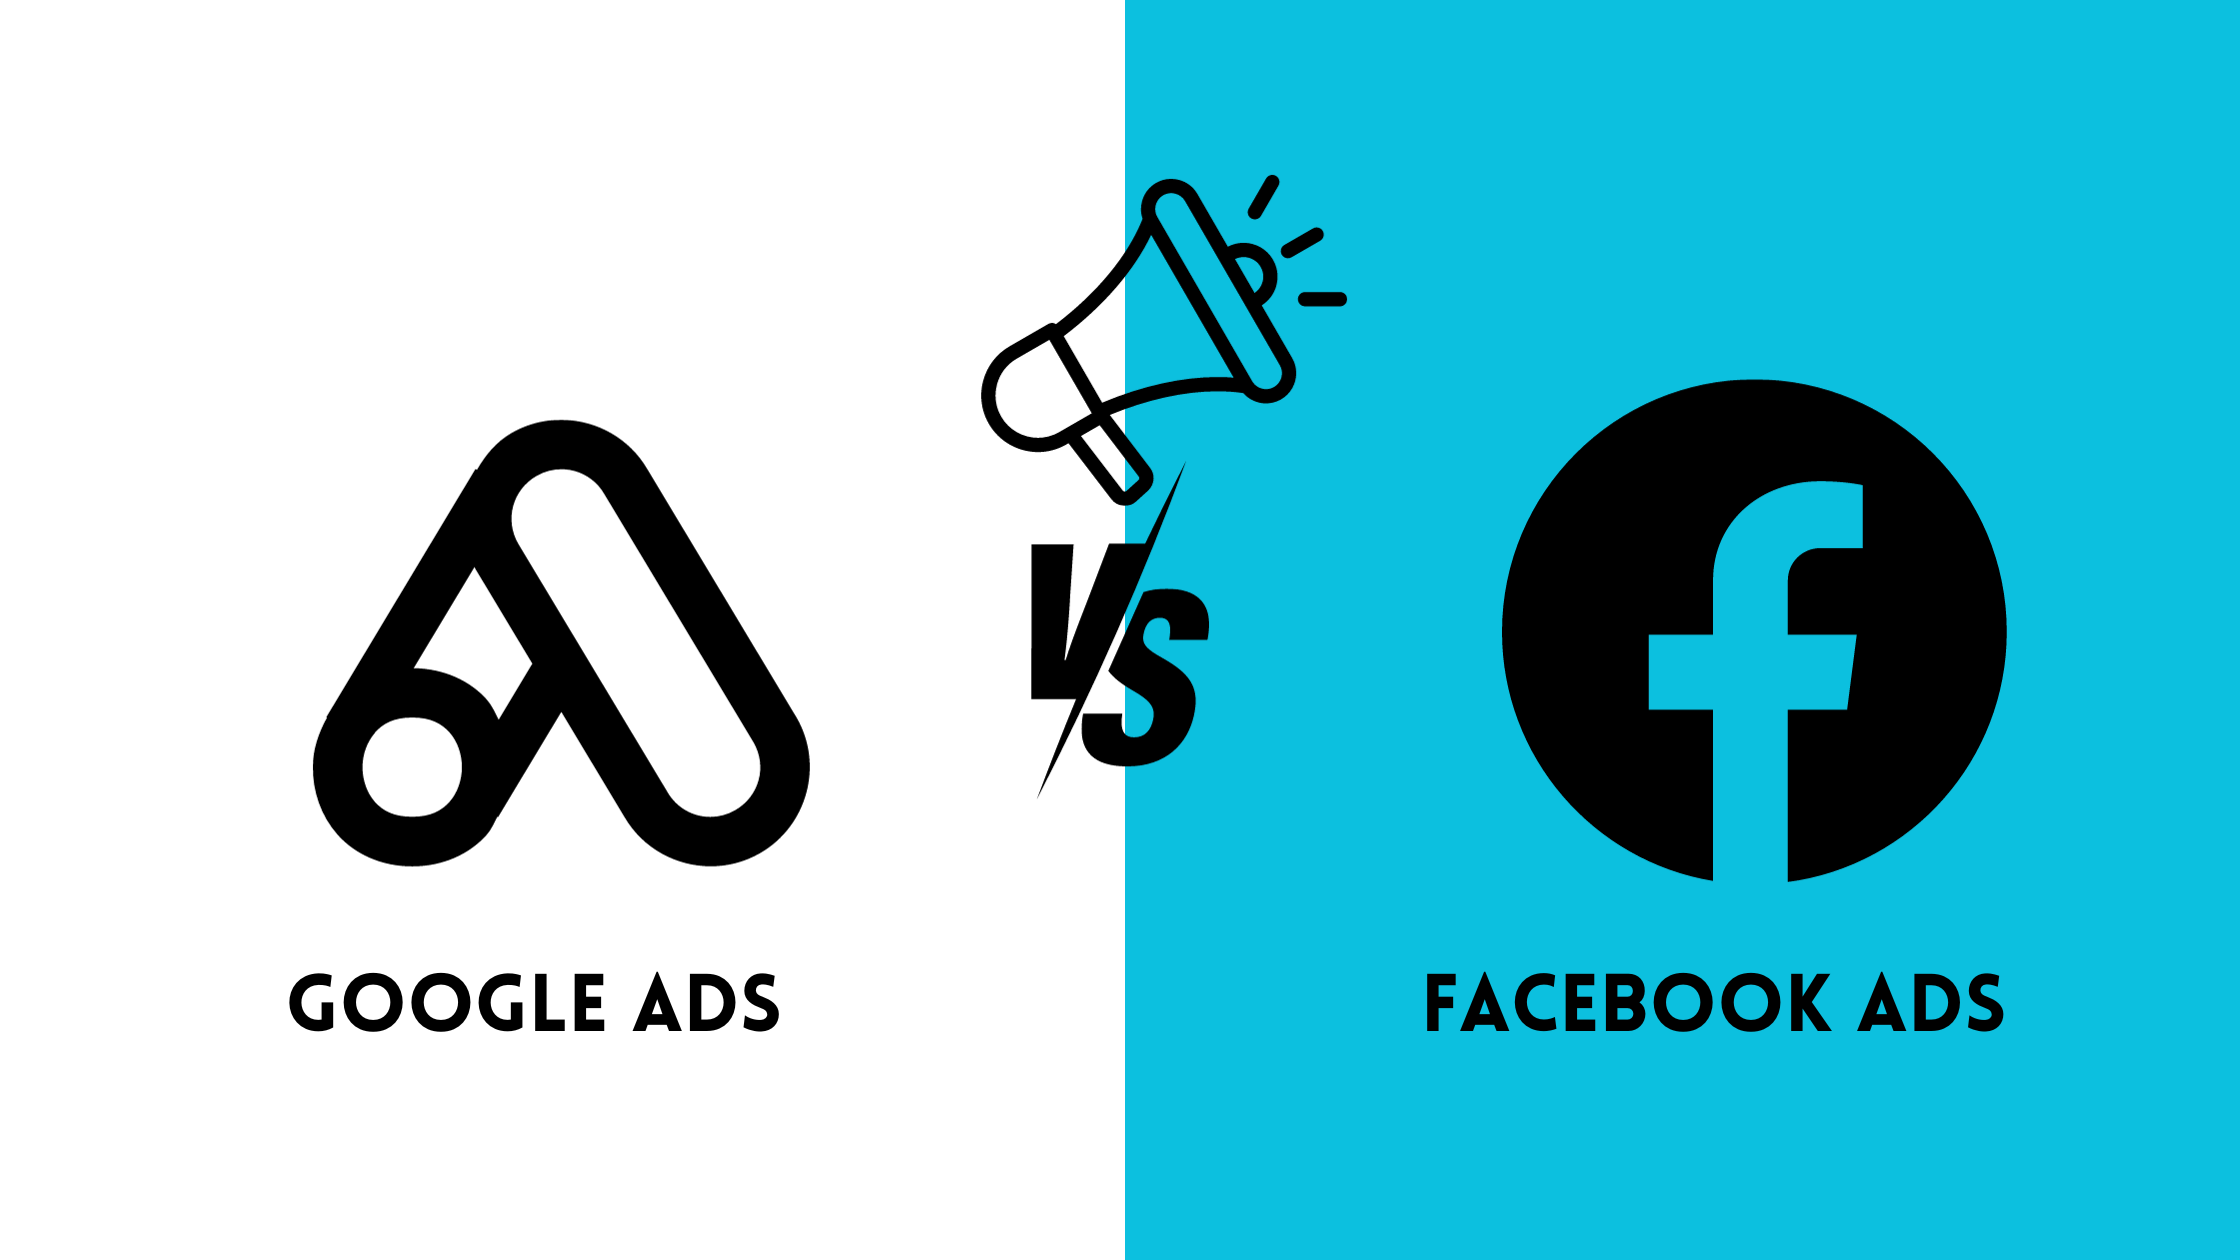 Google ads vs facebook ads